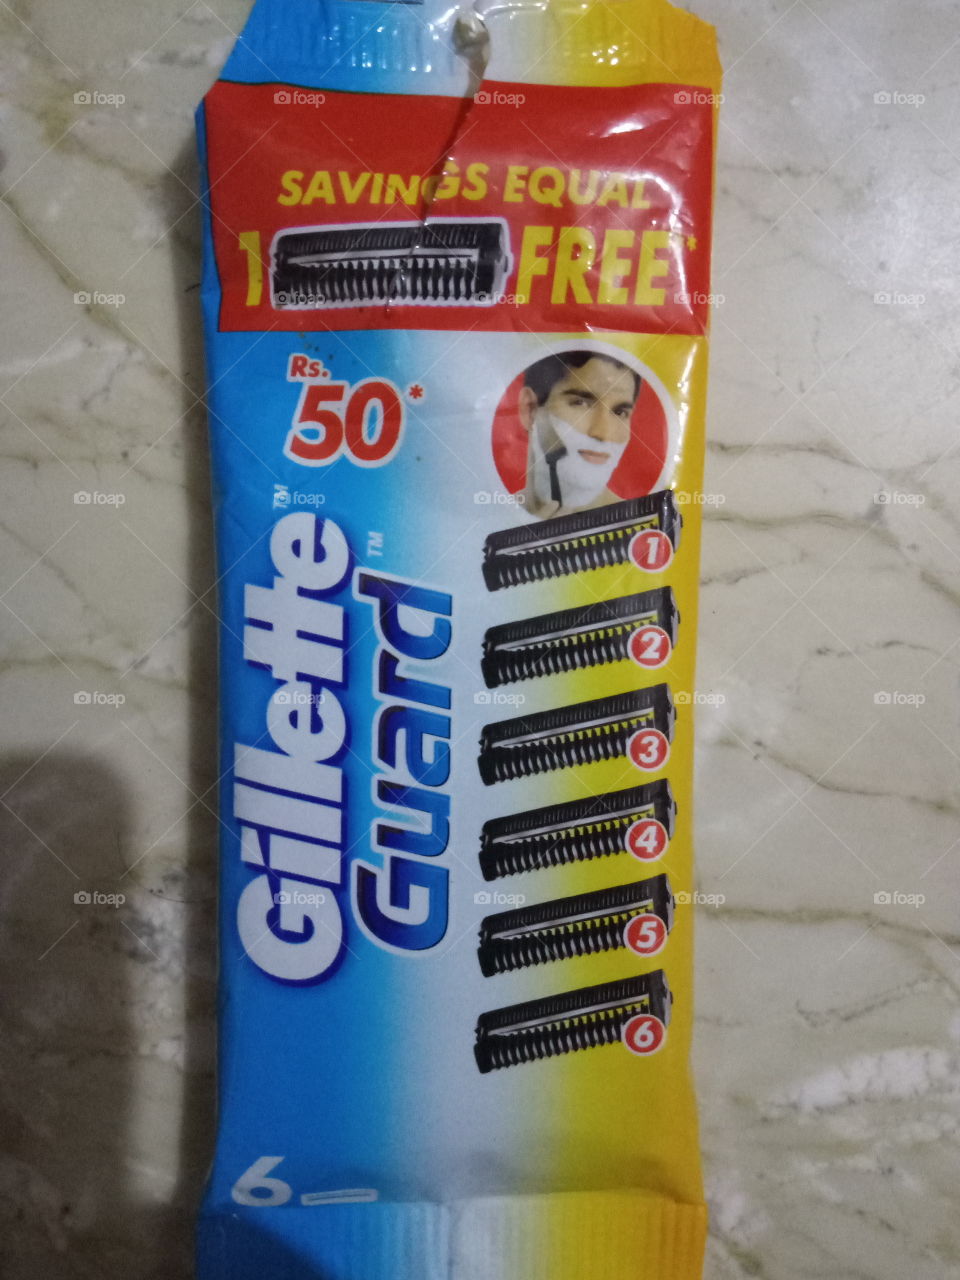 Gillette Guard